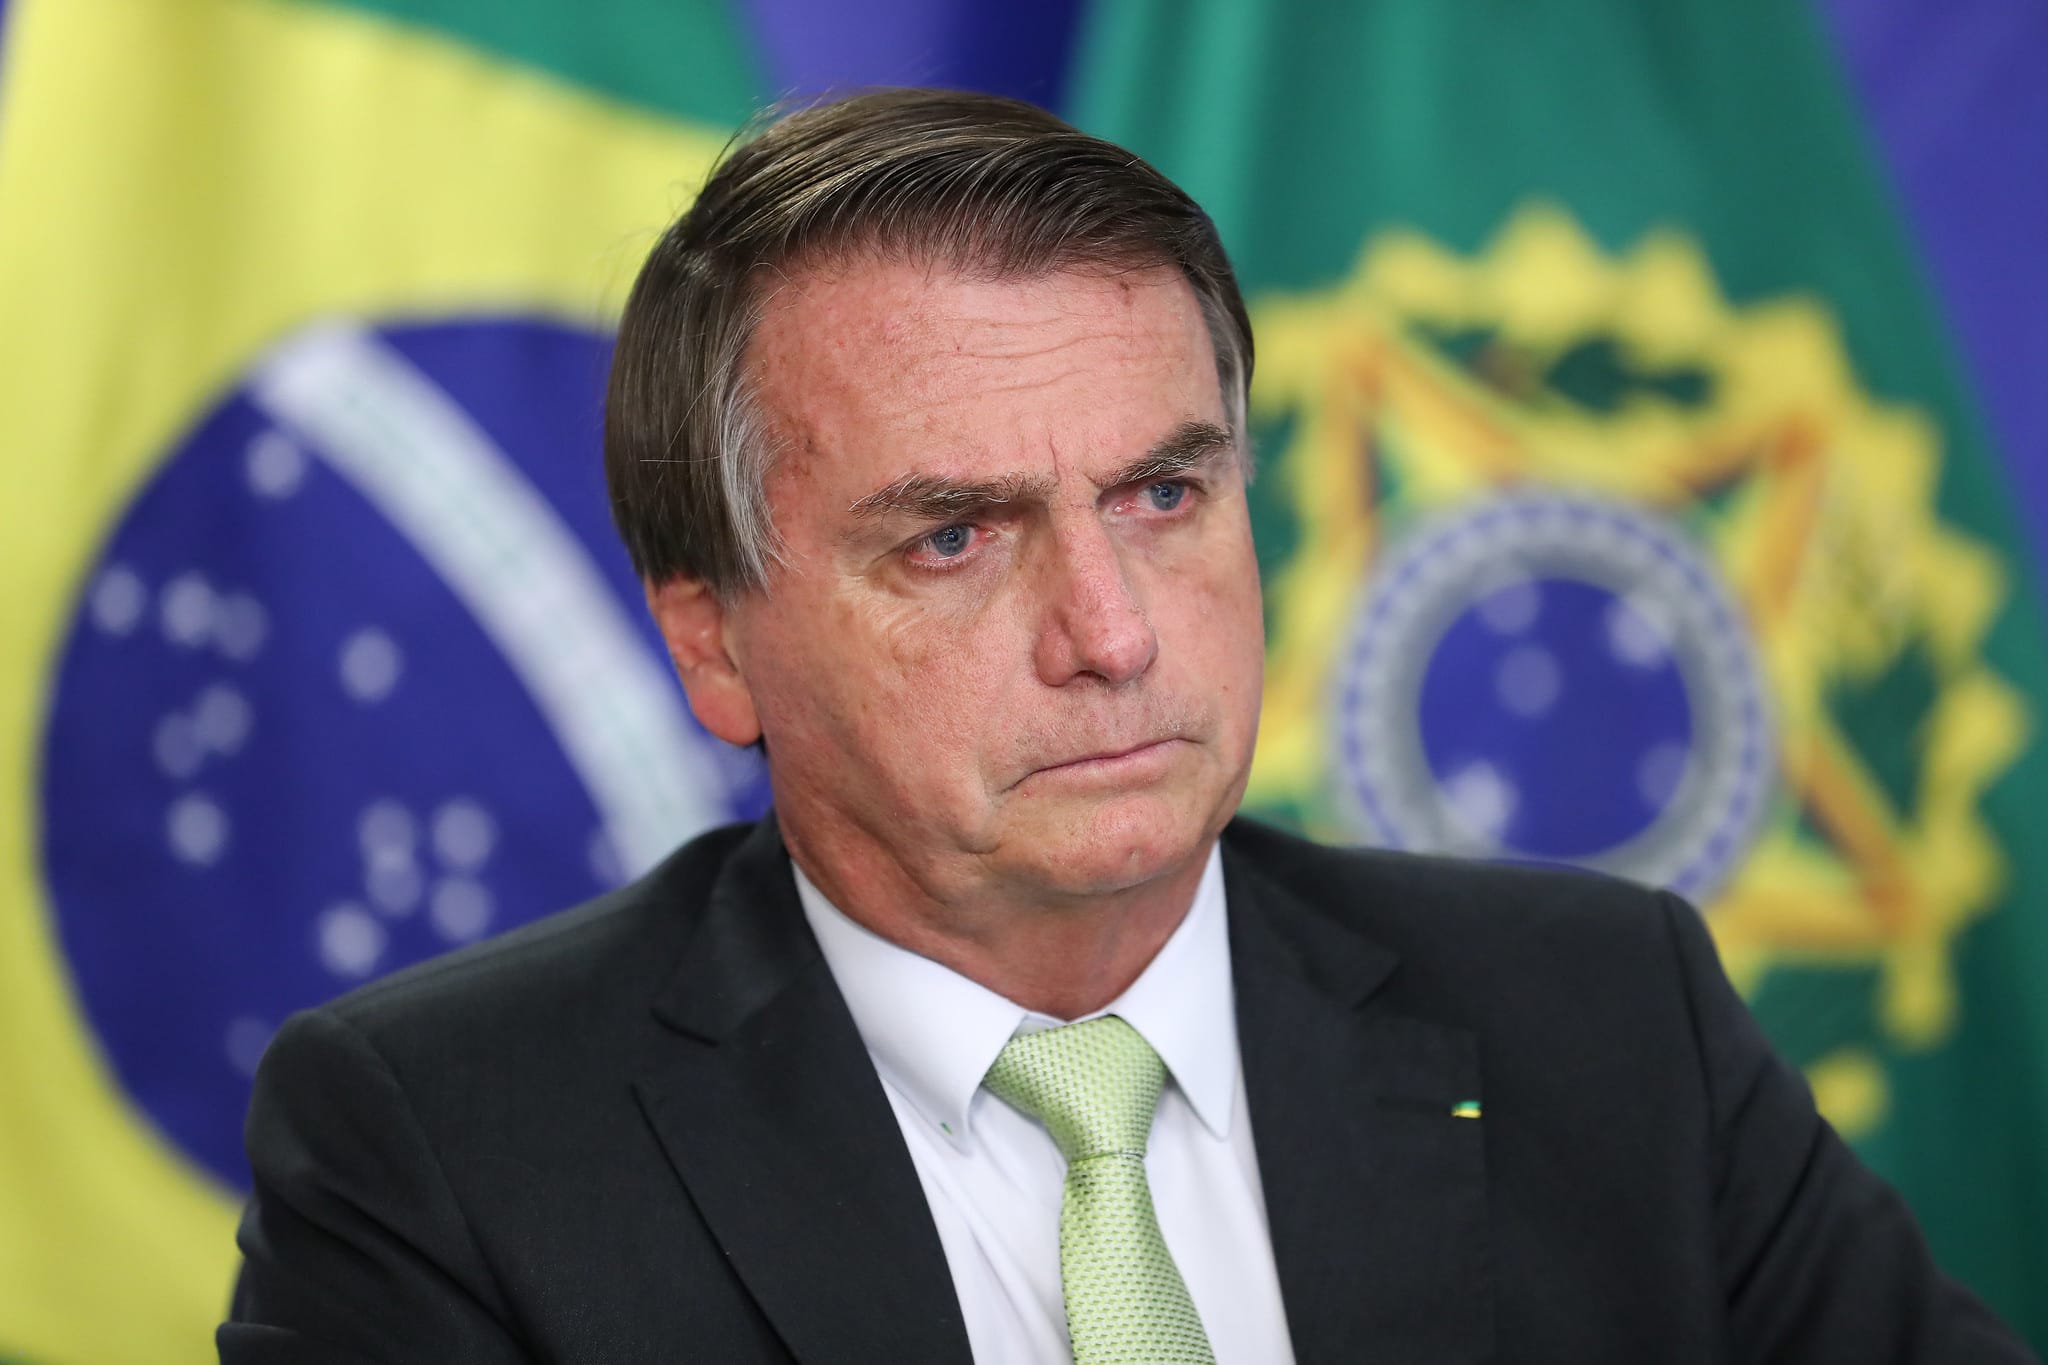 Por que pessoas inteligentes ainda apoiam Bolsonaro depois dos